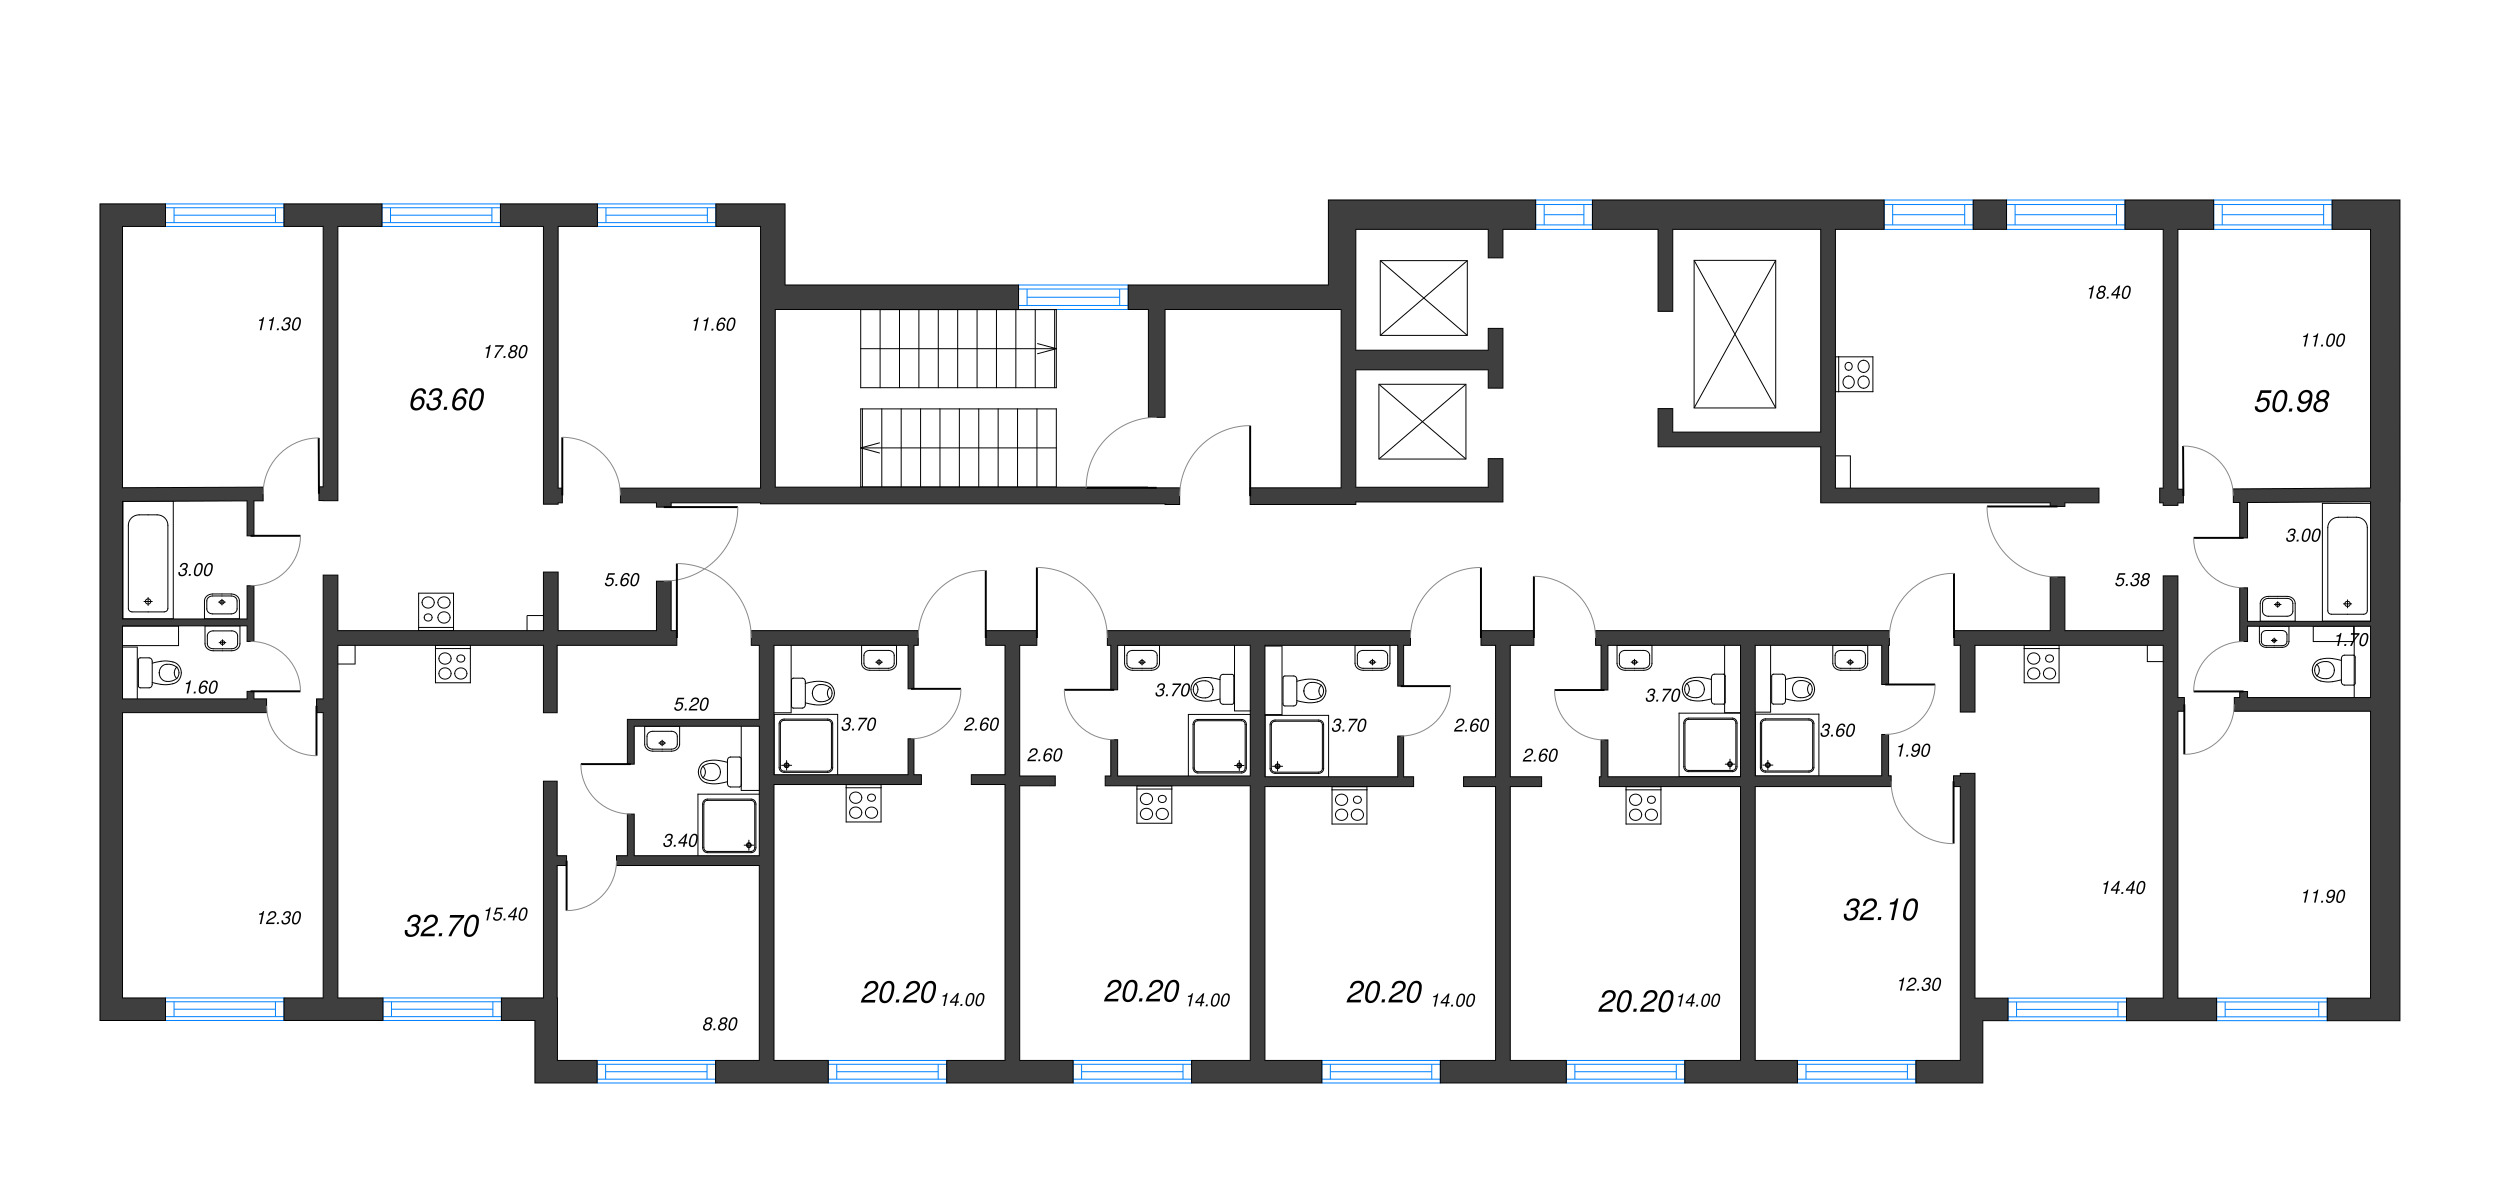 1-комнатная квартира, 32.1 м² в ЖК "Цветной город" - планировка этажа